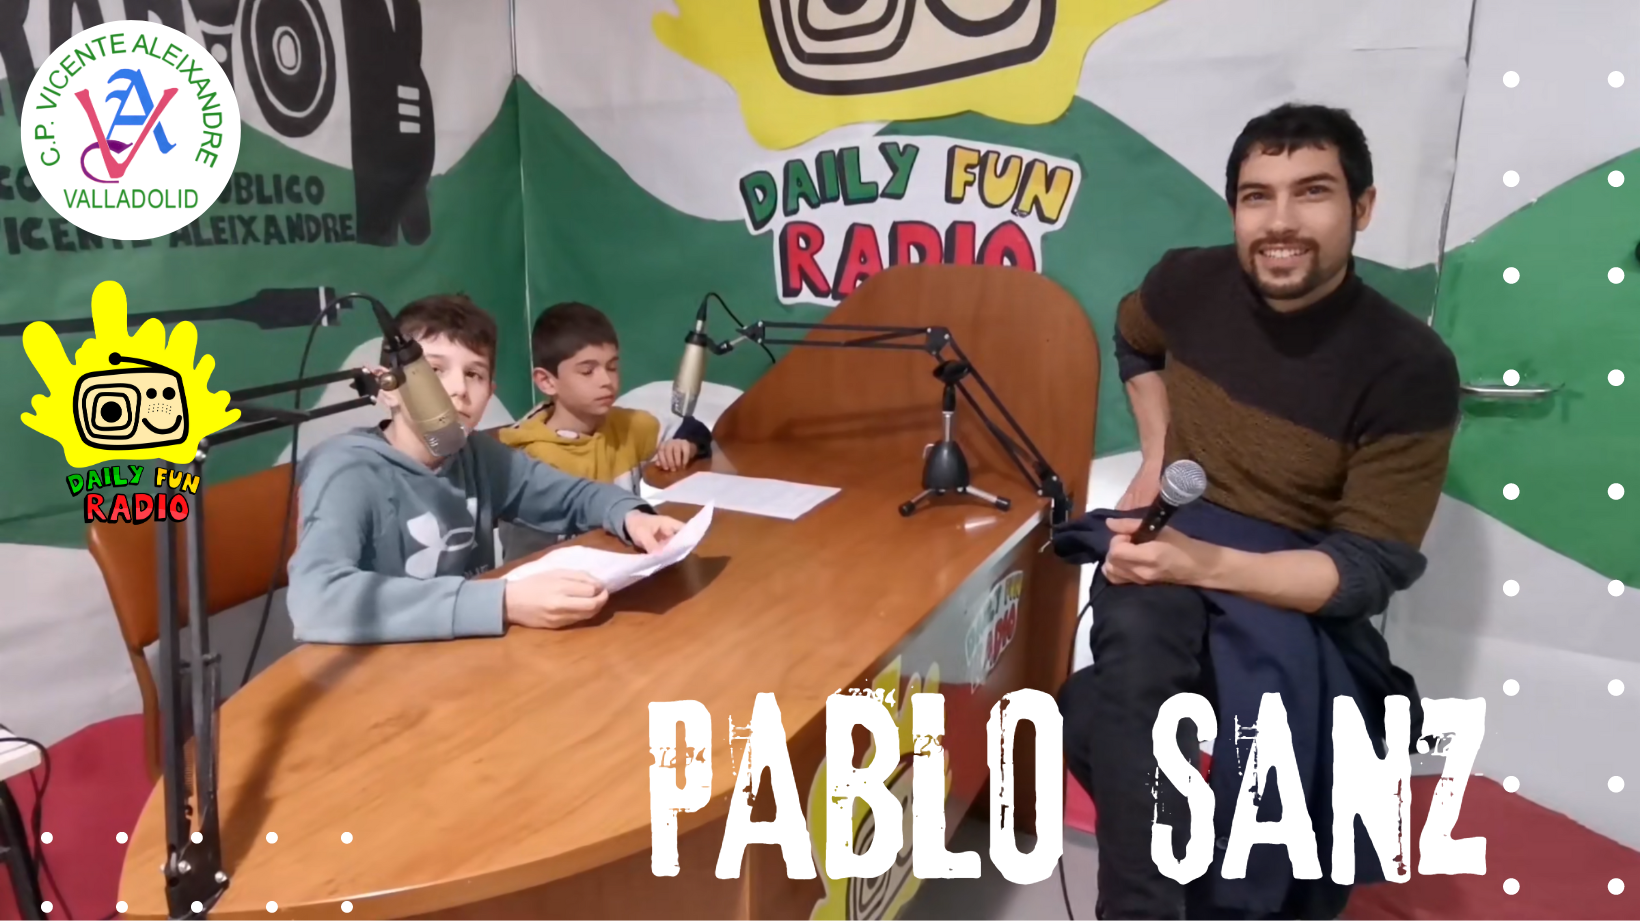 Daily Fun Radio Pablo Sanz